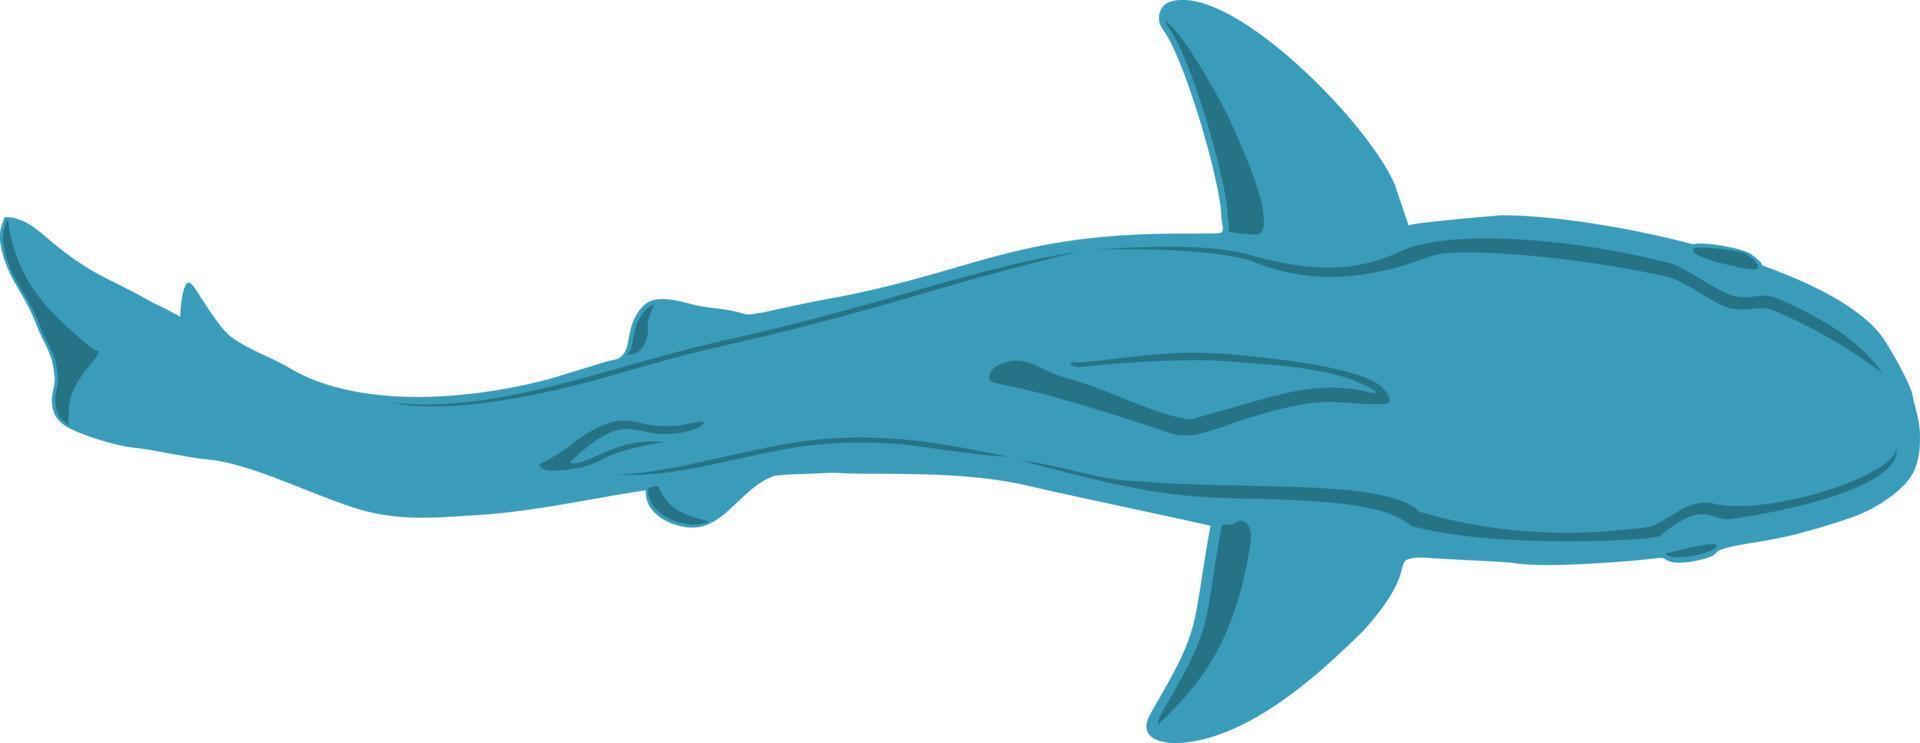 grand requin. vue de dessus de requin. illustration vectorielle en style plat ou dessin animé vecteur